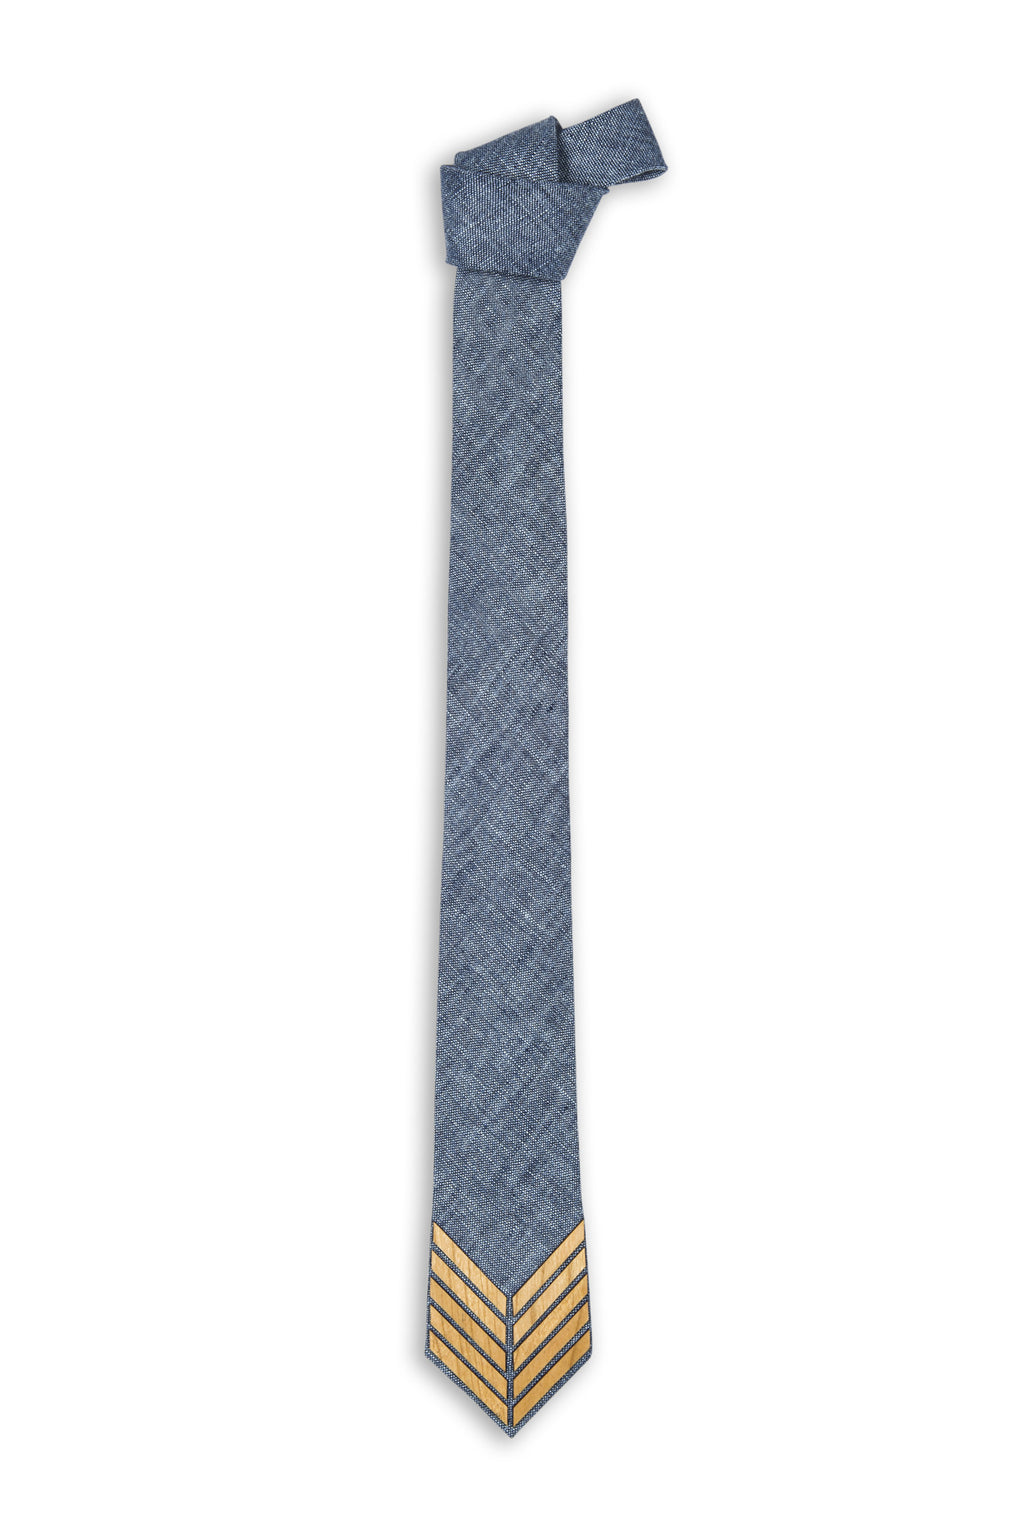 Cravate fait main lin bleue avec pièce de bois - Handmade linen bleu tie with wood pieces